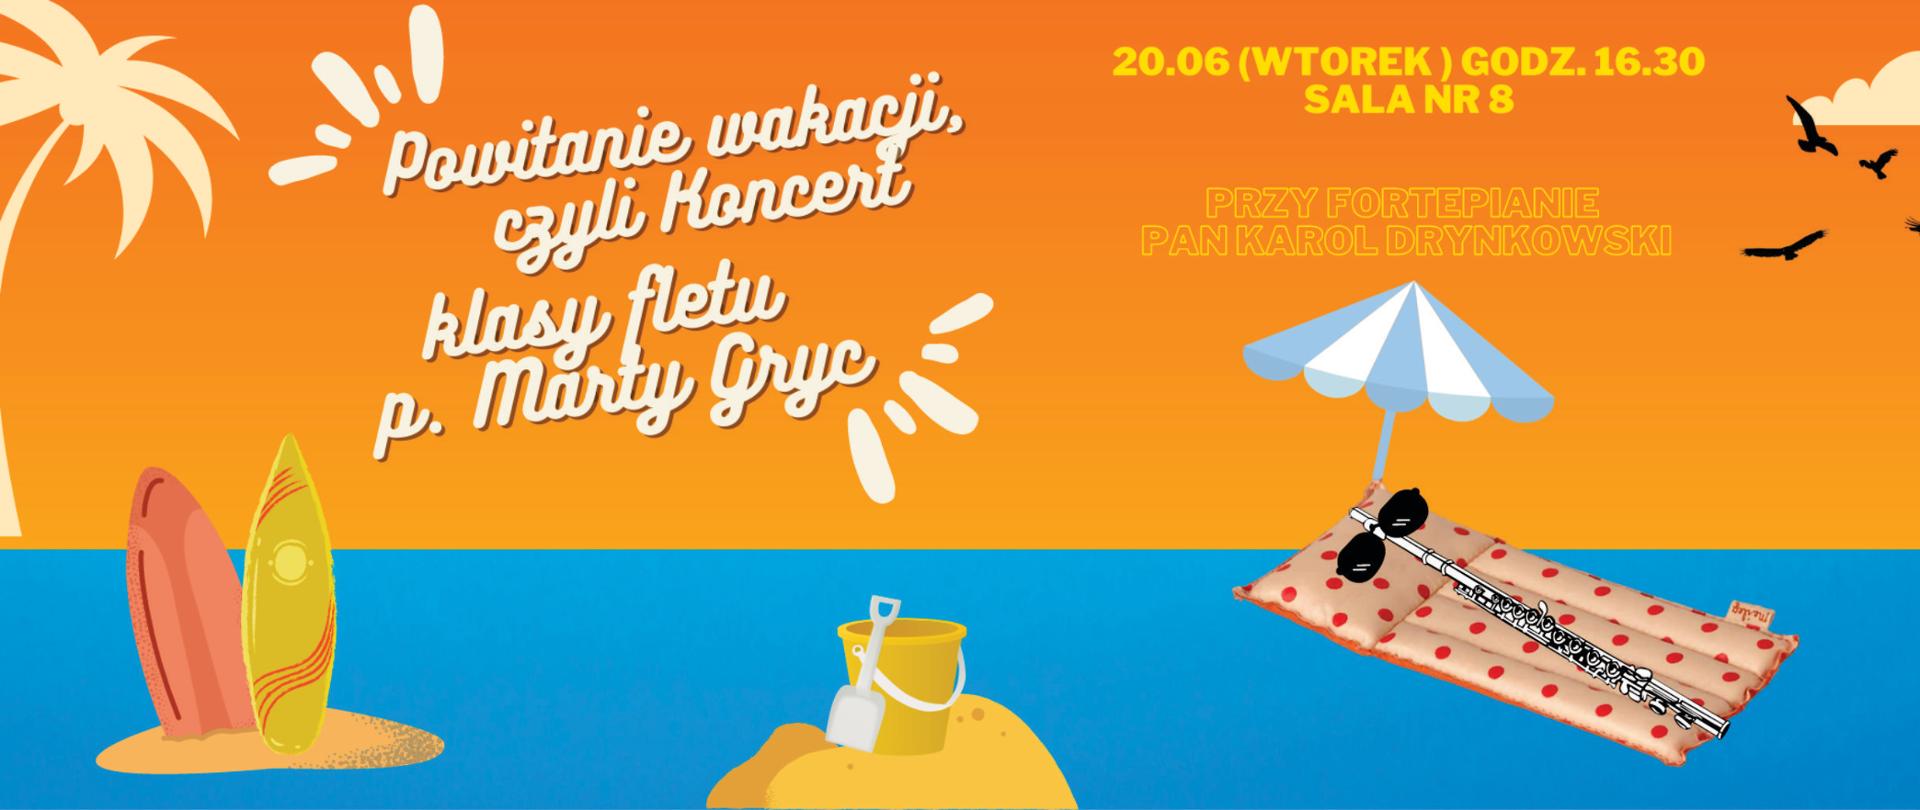 Plakat niebiesko-pomarańczowy stylizowany na widok plaży i morza informujący o koncert fletu Marty Gryc w dniu 20.06.2023r.o godz. 16:30.